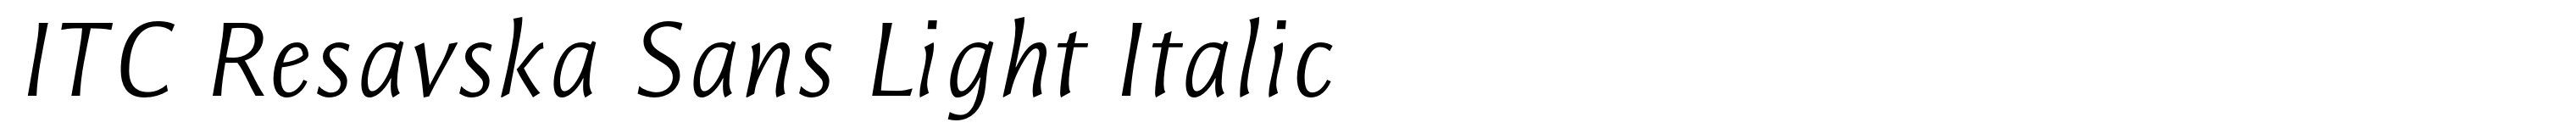 ITC Resavska Sans Light Italic